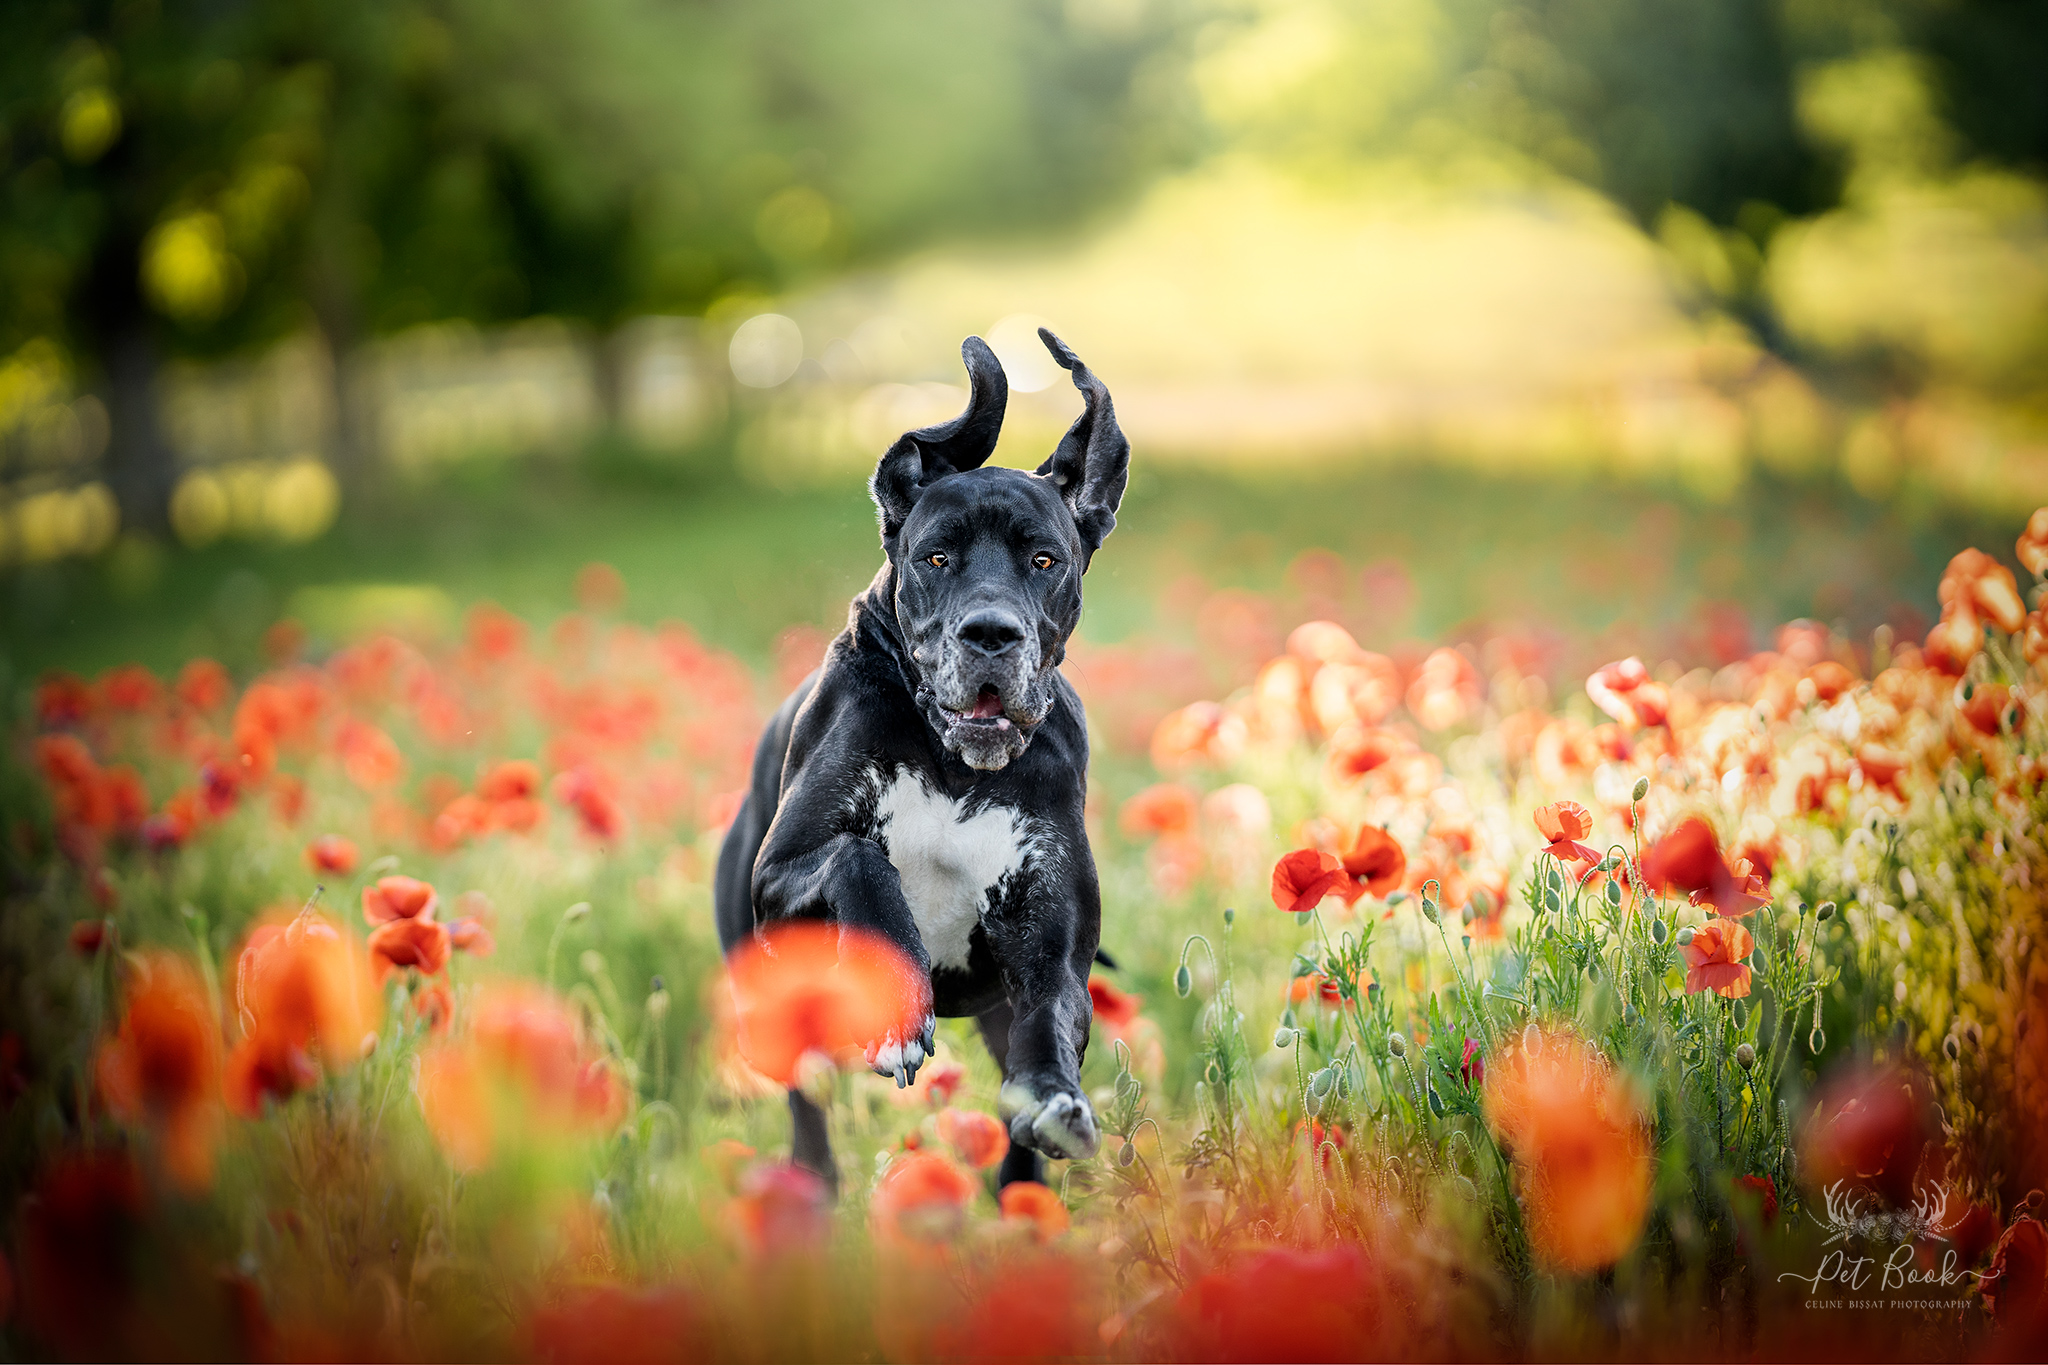 apprendre photo animalière chien photo devenir photographe formation photographe chien canin